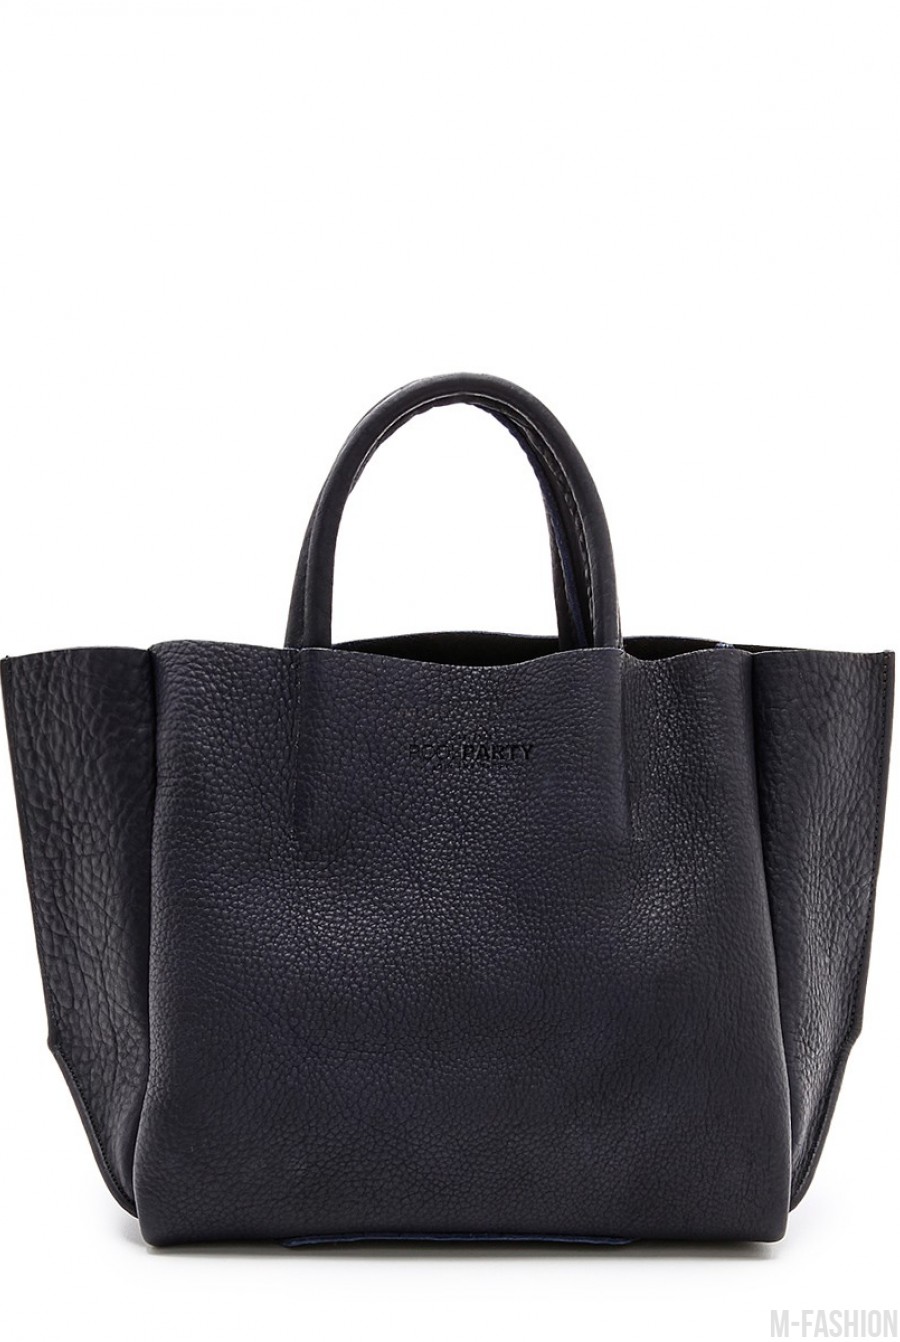 Кожаная черная сумка Soho классического дизайна - Фото 1